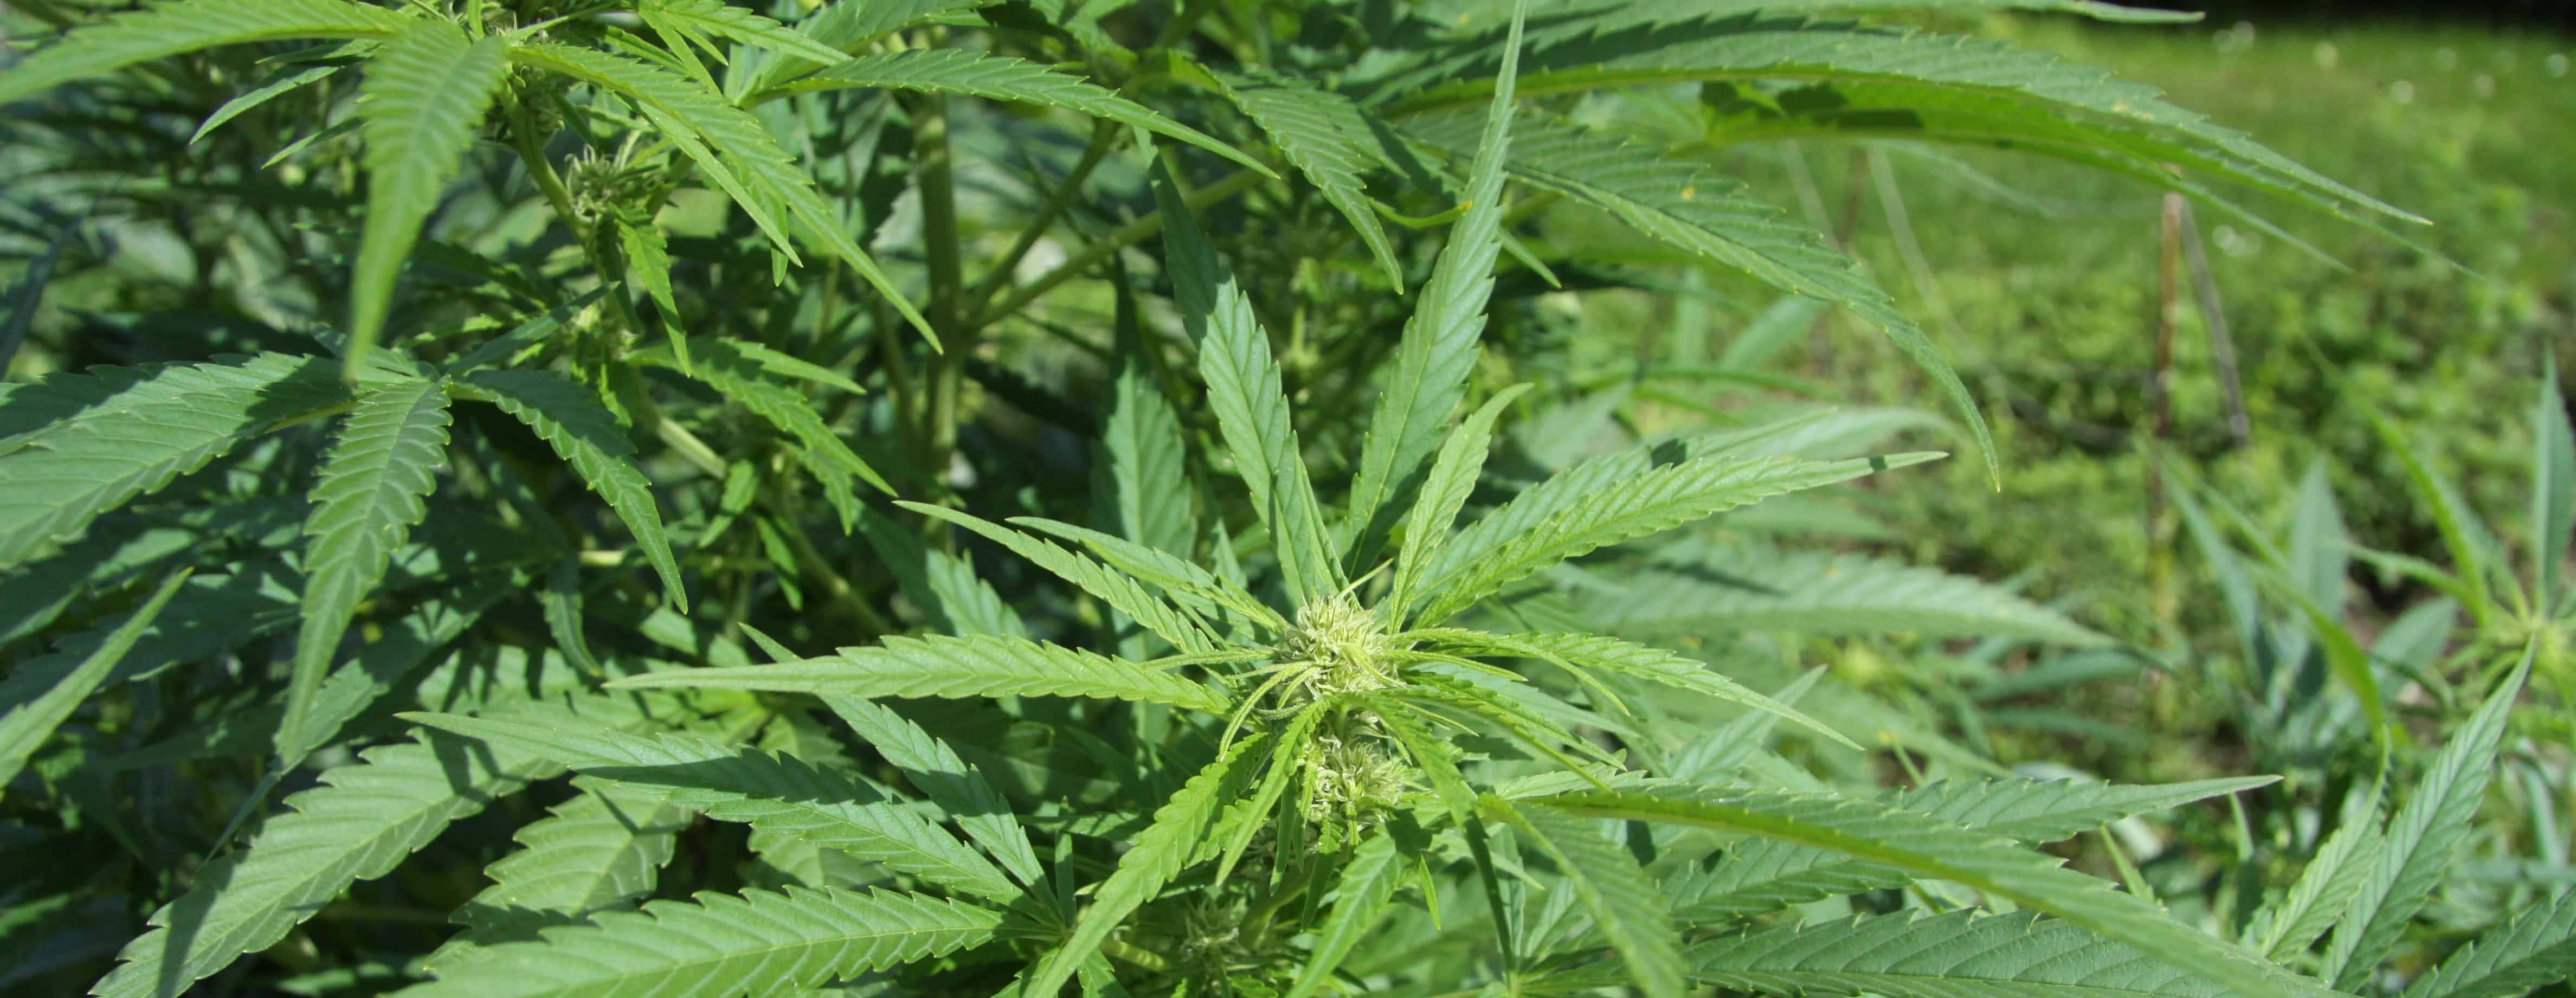 hemp-cannabis-jpg-14